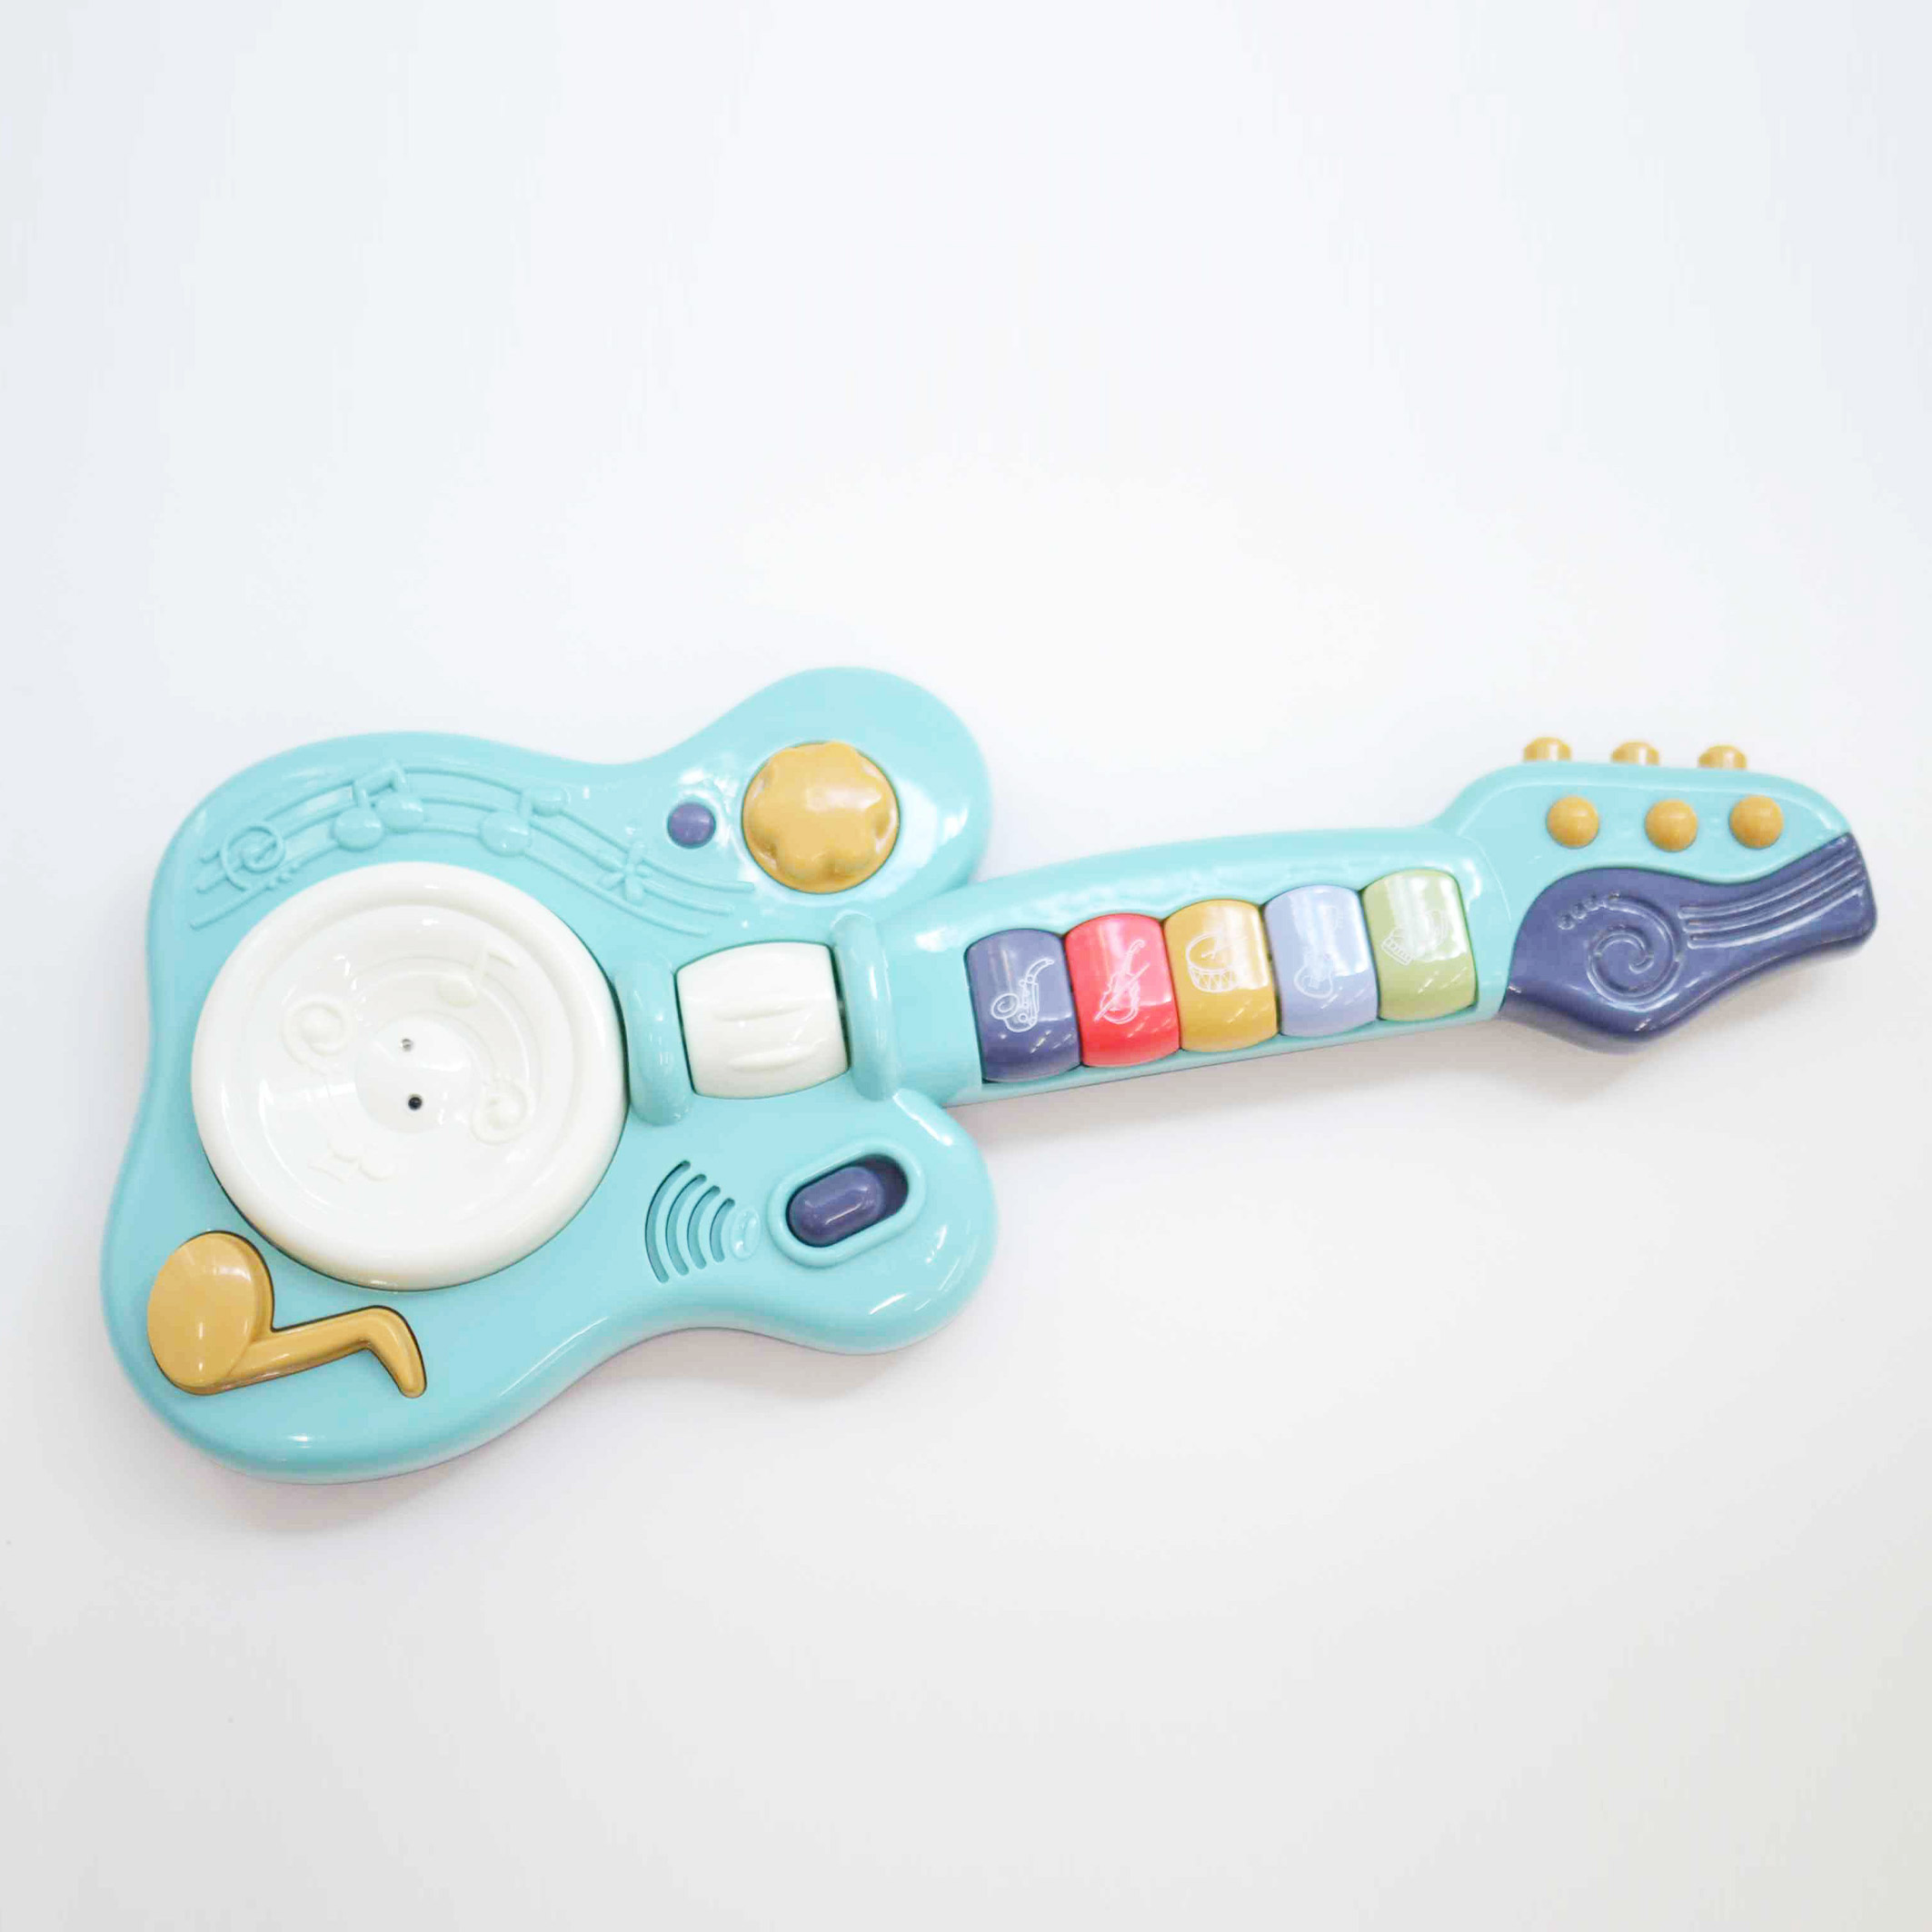 予約販売品】 楽器のおもちゃ 鉄琴 楽器 音楽 木製 幼児 指先の知育 知育 室内 遊び